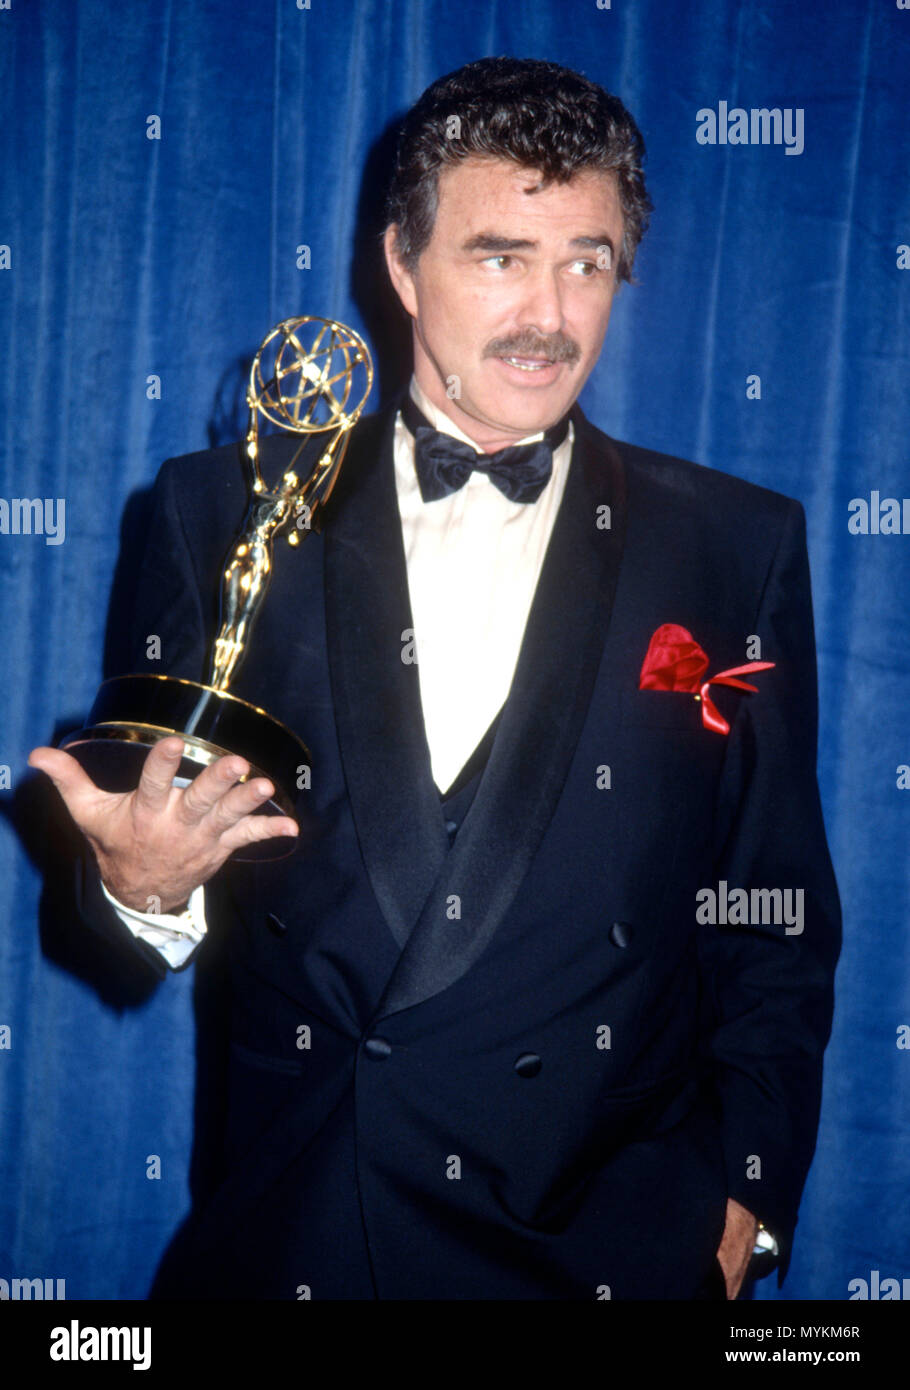 PASADENA, CA - le 25 août : l'acteur Burt Reynolds assiste à la 43e Primetime Emmy Awards annuel le 25 août 1991 à Pasadena Civic Auditorium à Pasadena, en Californie. Photo de Barry King/Alamy Stock Photo Banque D'Images